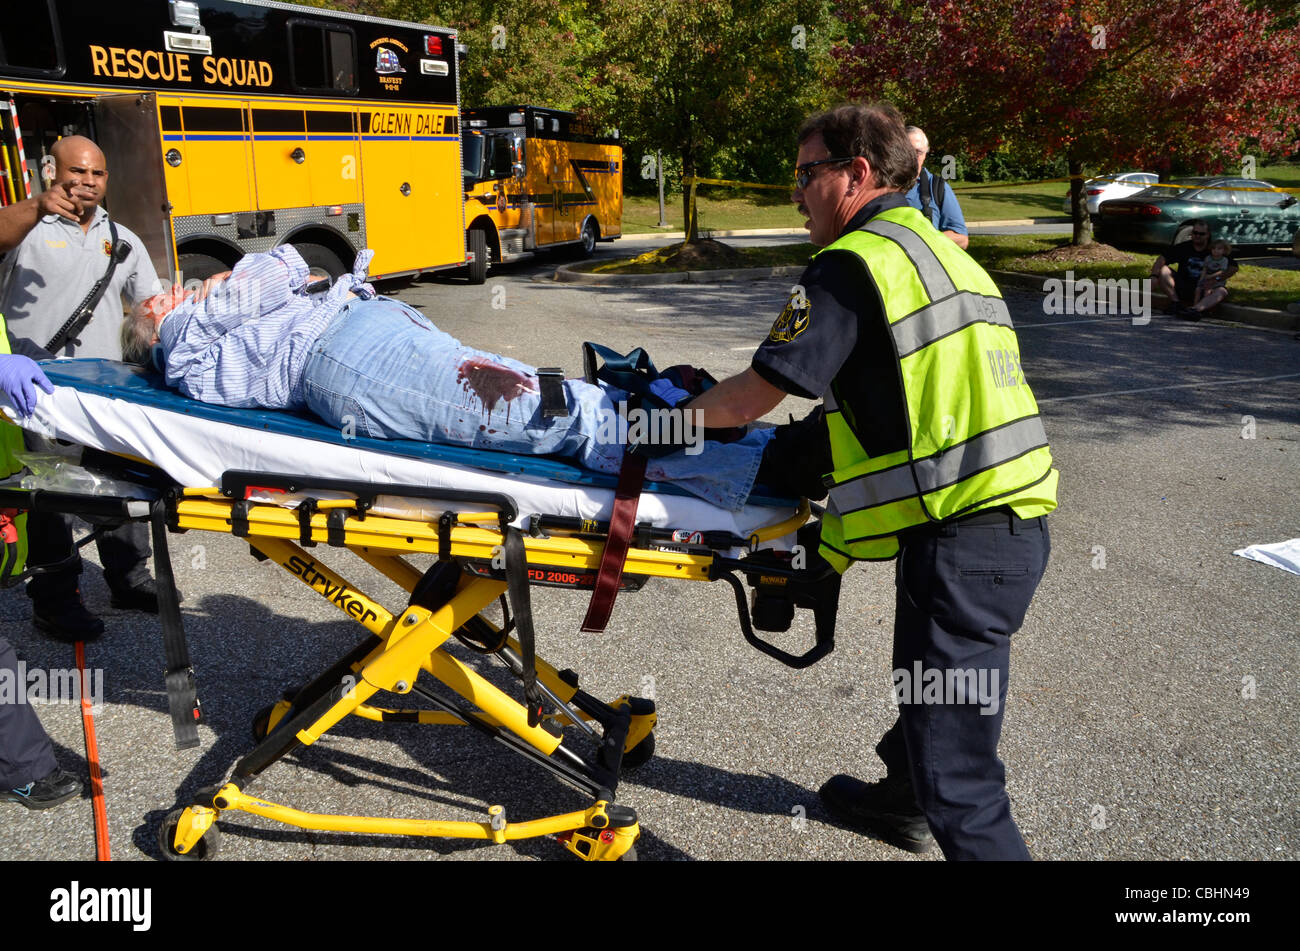 Les sauveteurs prendre une personne blessée à une ambulance en attente à Glendale, Arizona Banque D'Images